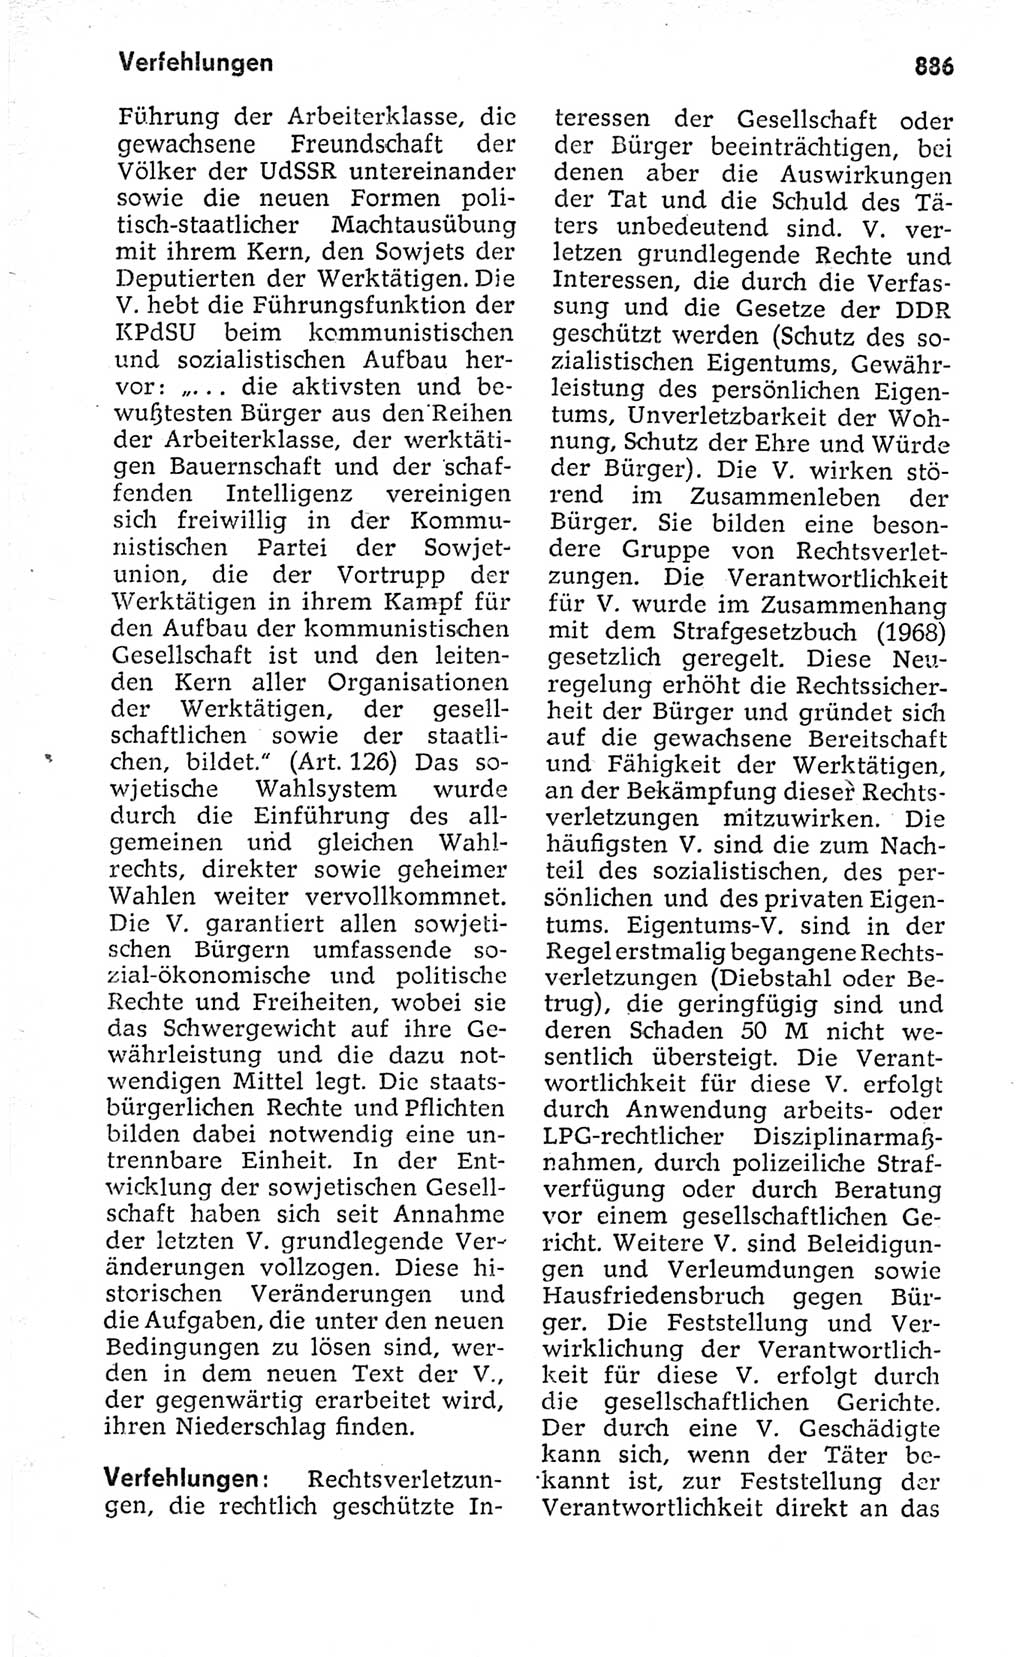 Kleines politisches Wörterbuch [Deutsche Demokratische Republik (DDR)] 1973, Seite 886 (Kl. pol. Wb. DDR 1973, S. 886)